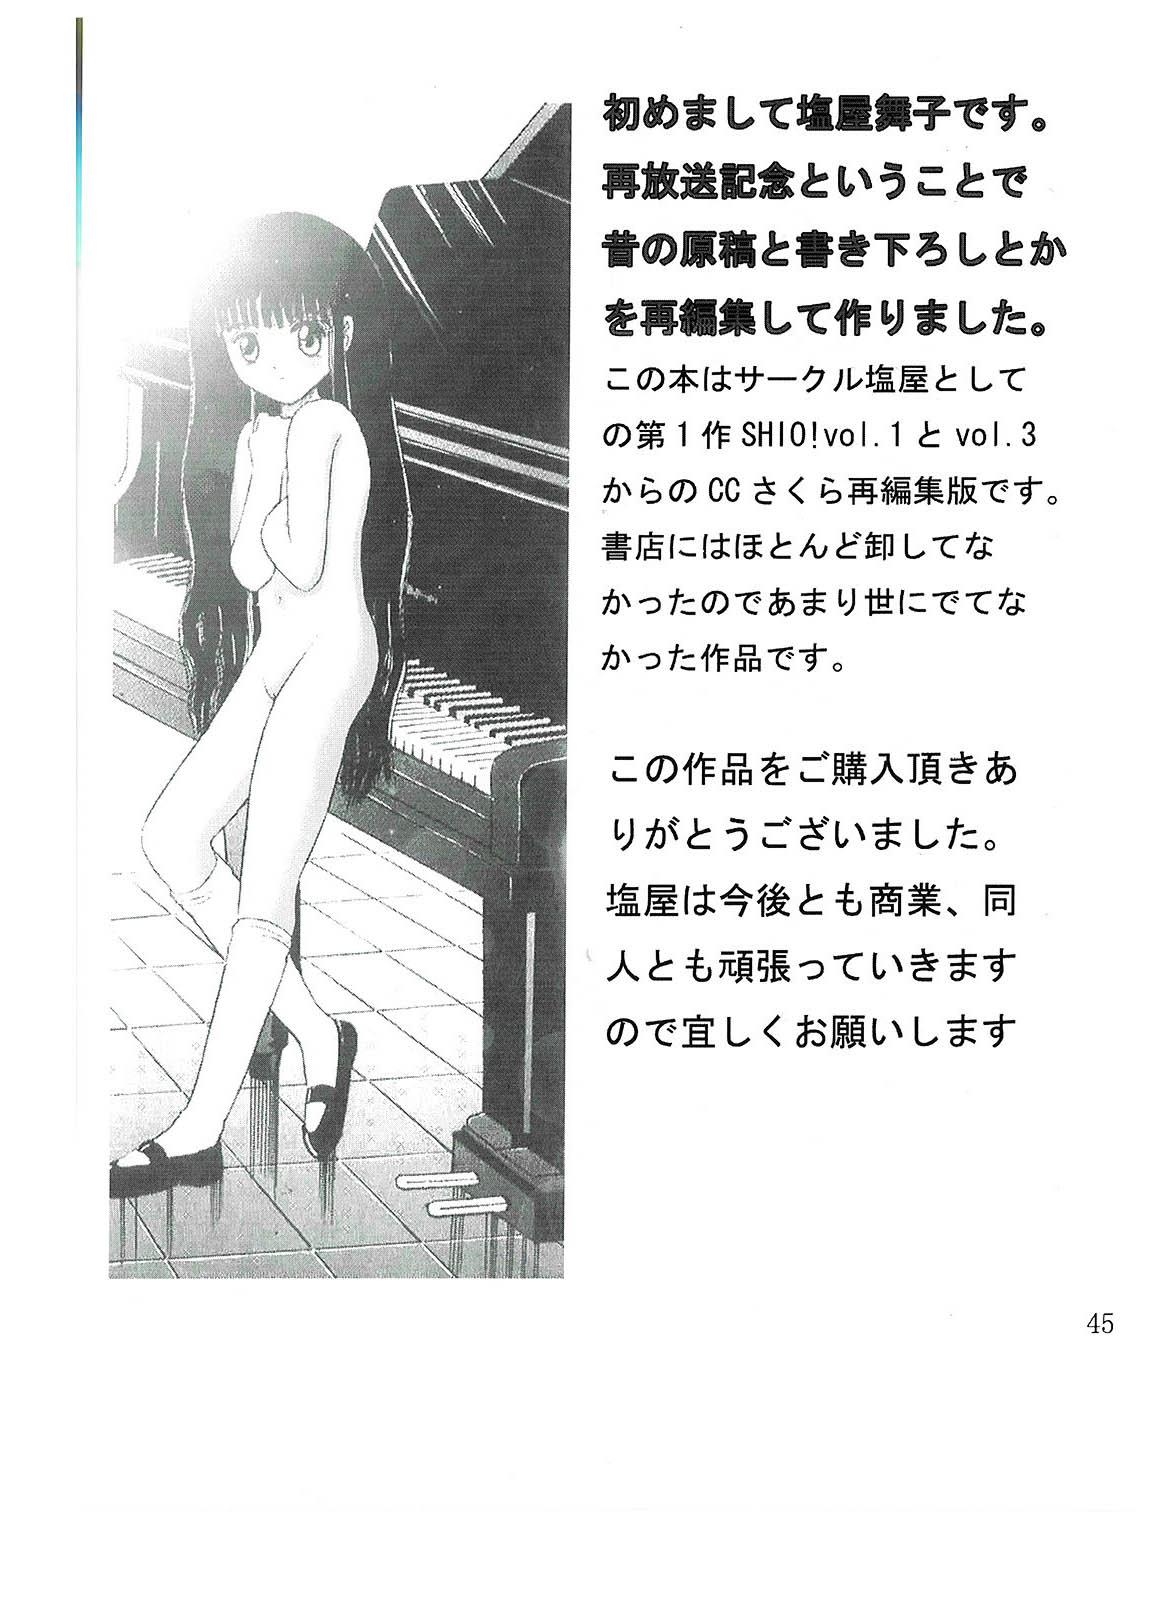 Peludo SHIO!re vol.1 - Cardcaptor sakura Blow Job - Page 45